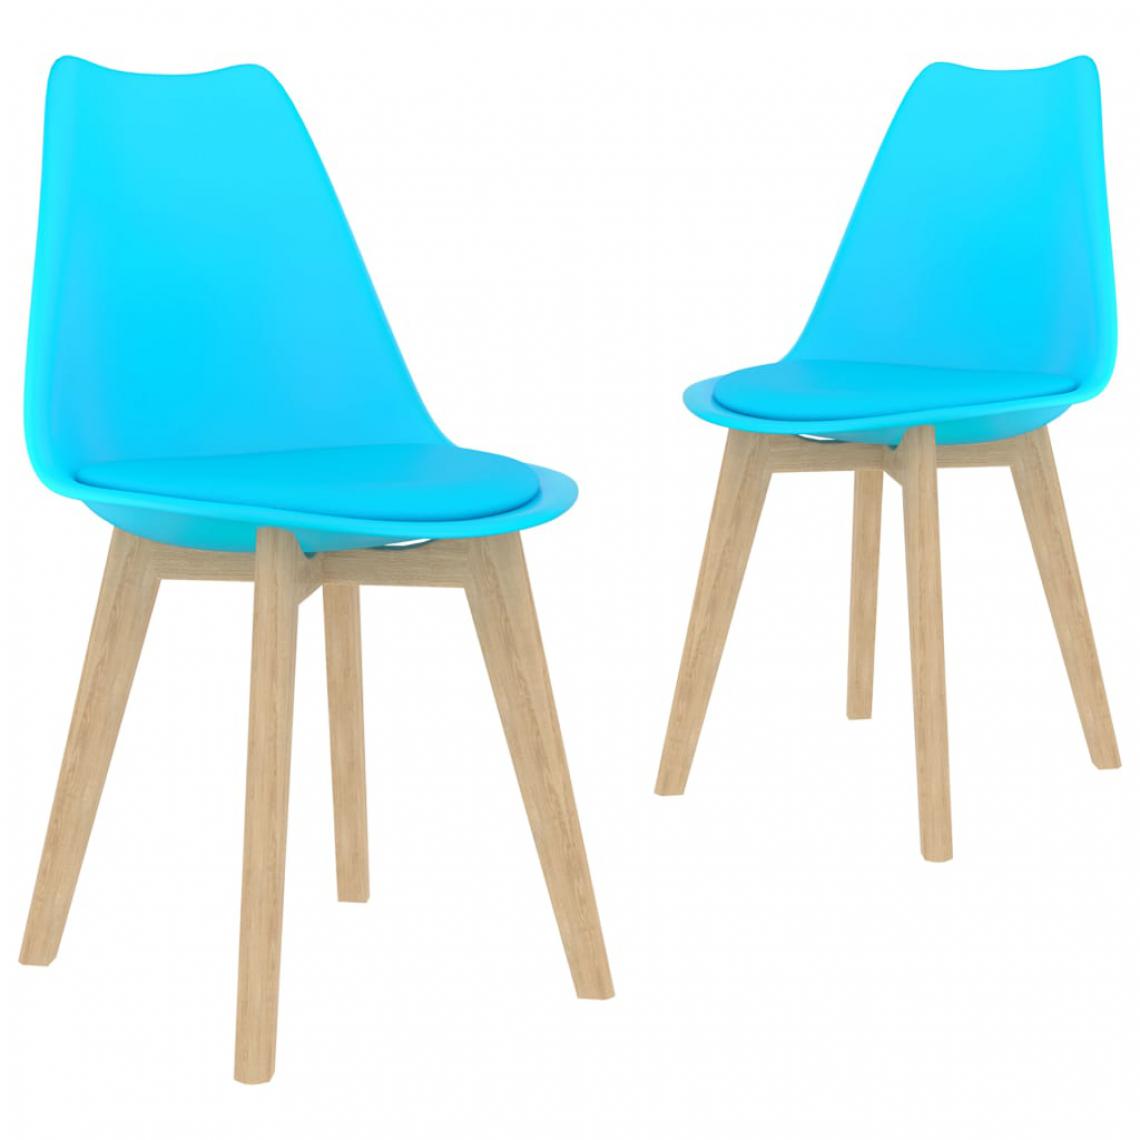 Vidaxl - vidaXL Chaises de salle à manger 2 pcs Bleu Plastique - Chaises